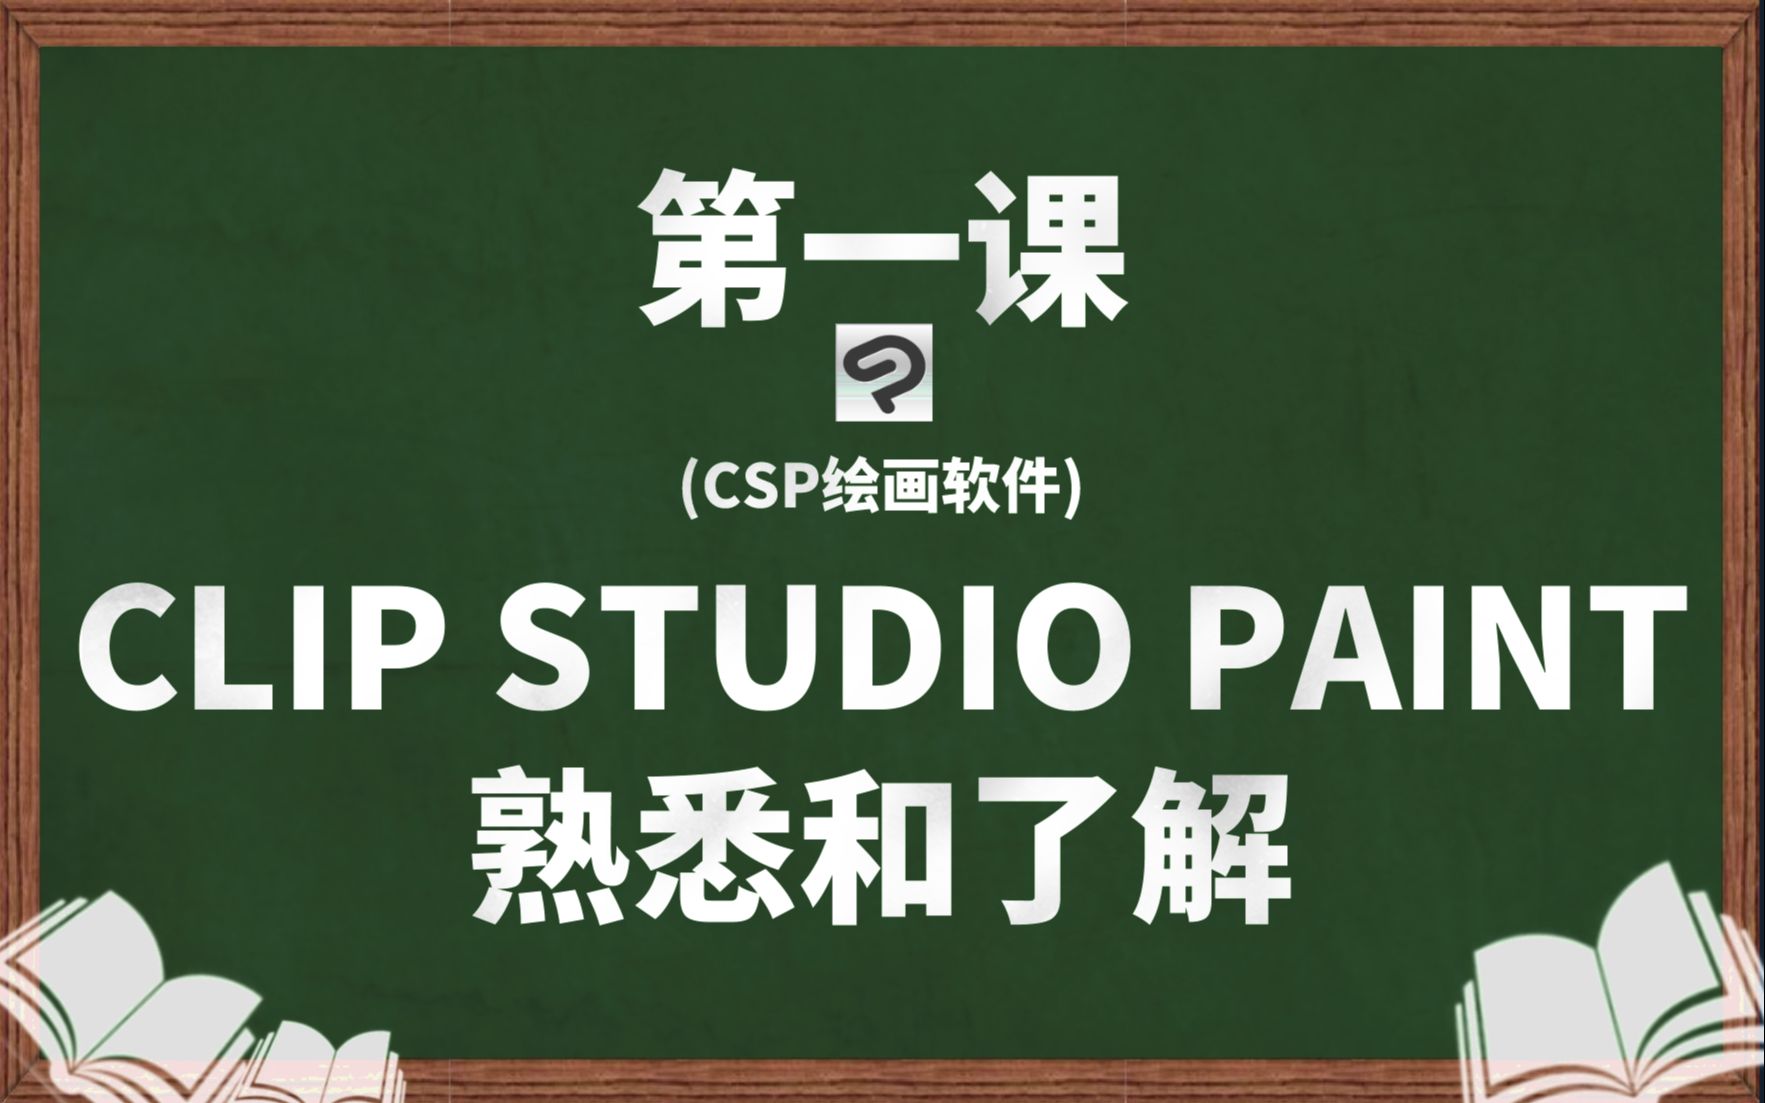 第一课：CLIP STUDIO PAINT （CSP）软件的熟悉和了解